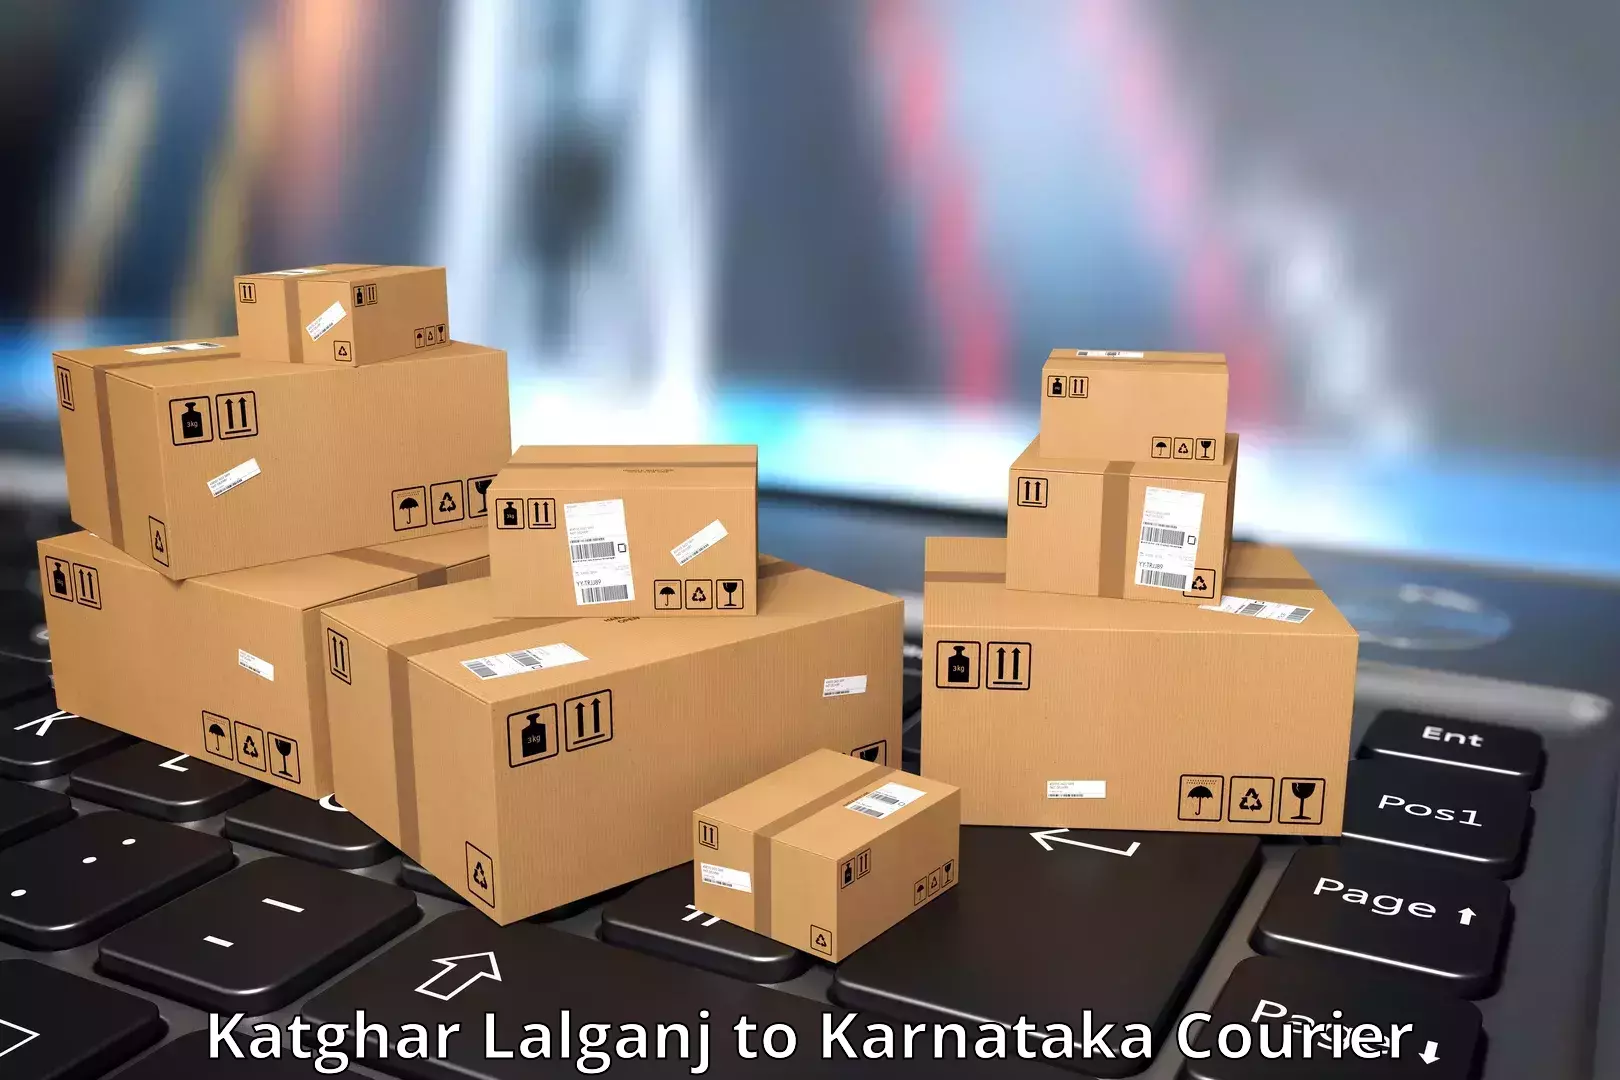 Nationwide shipping capabilities Katghar Lalganj to Chitradurga